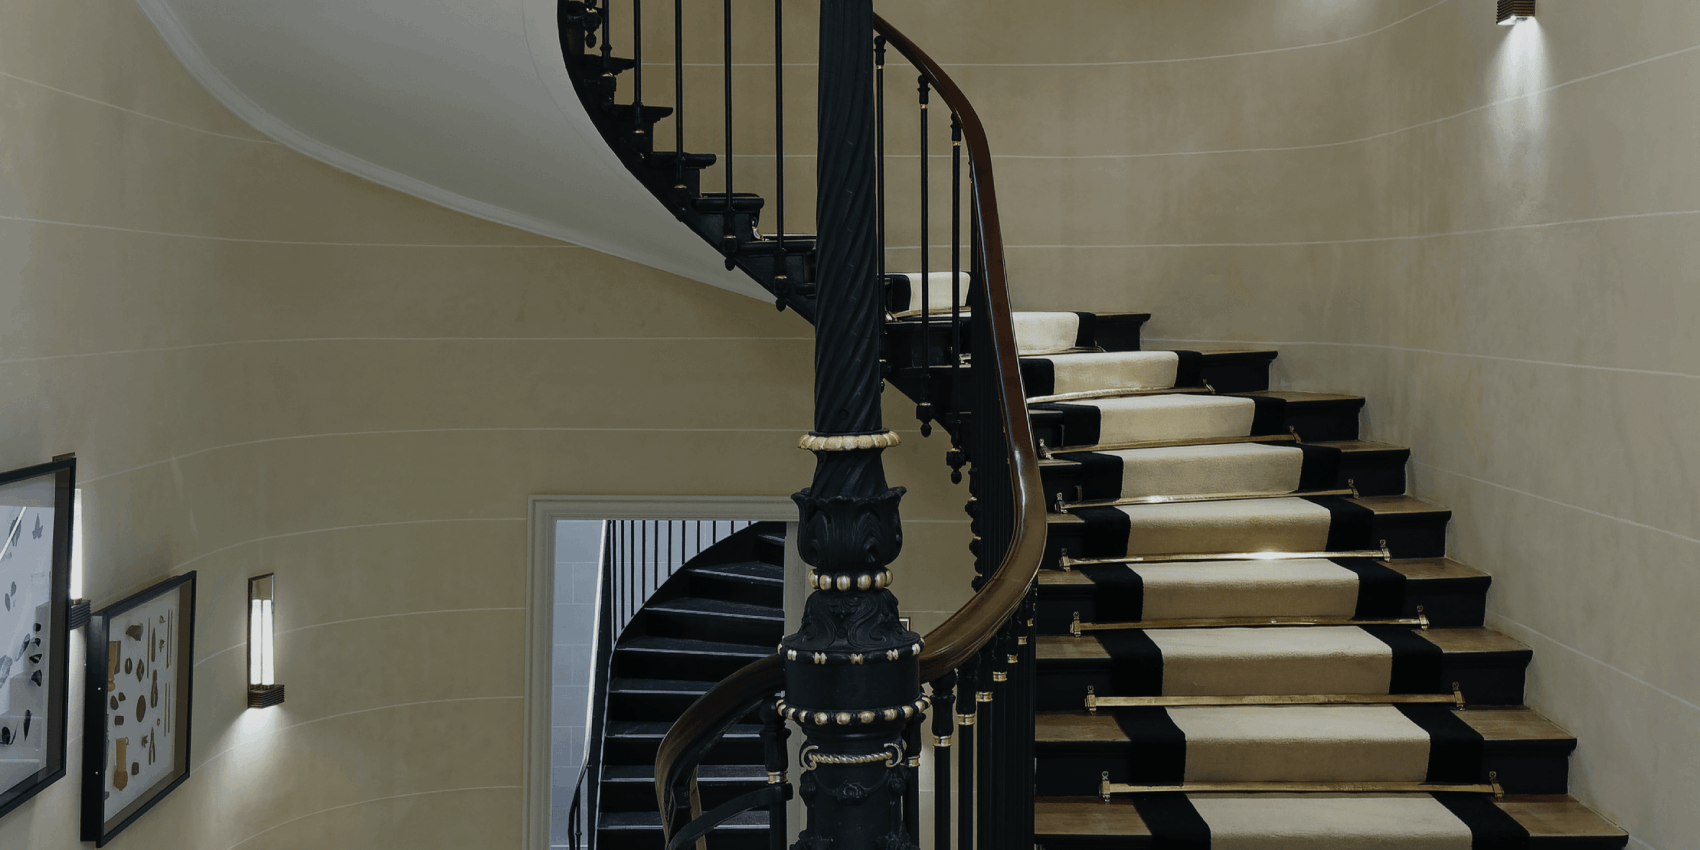 Boucheron Flagship escalier d’honneur (The Grand Staircase)